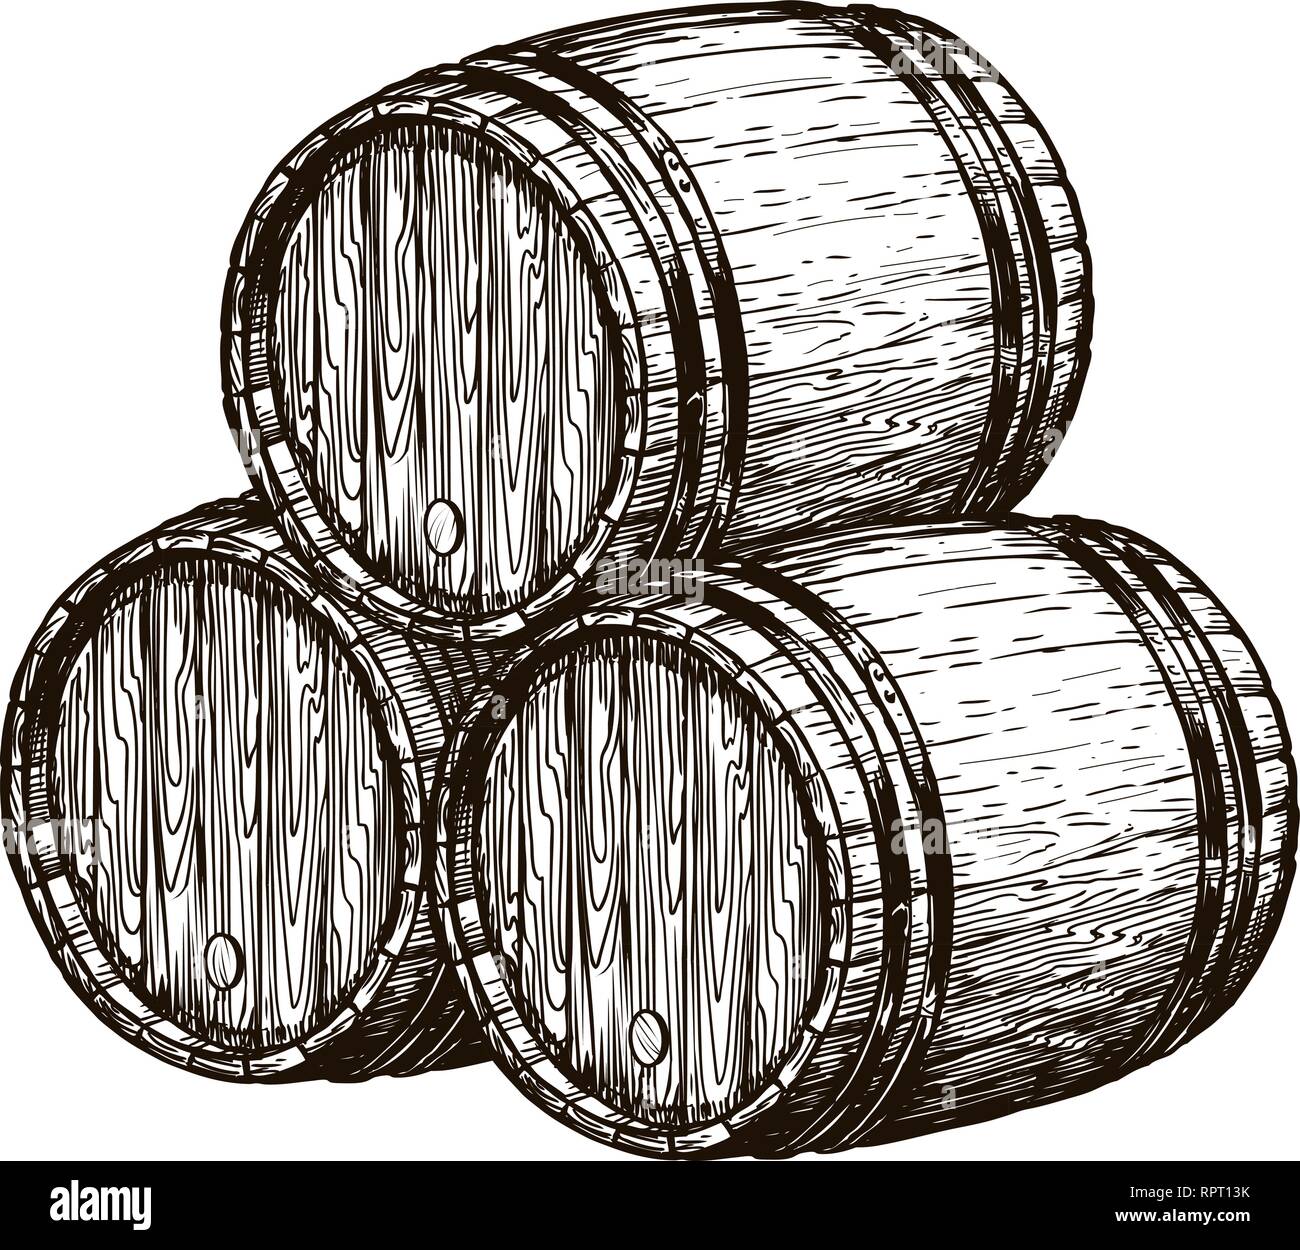 Des tonneaux de vin en bois. La vinification, cave à vin, boisson alcoolisée de croquis. Hand drawn vintage vector illustration Illustration de Vecteur